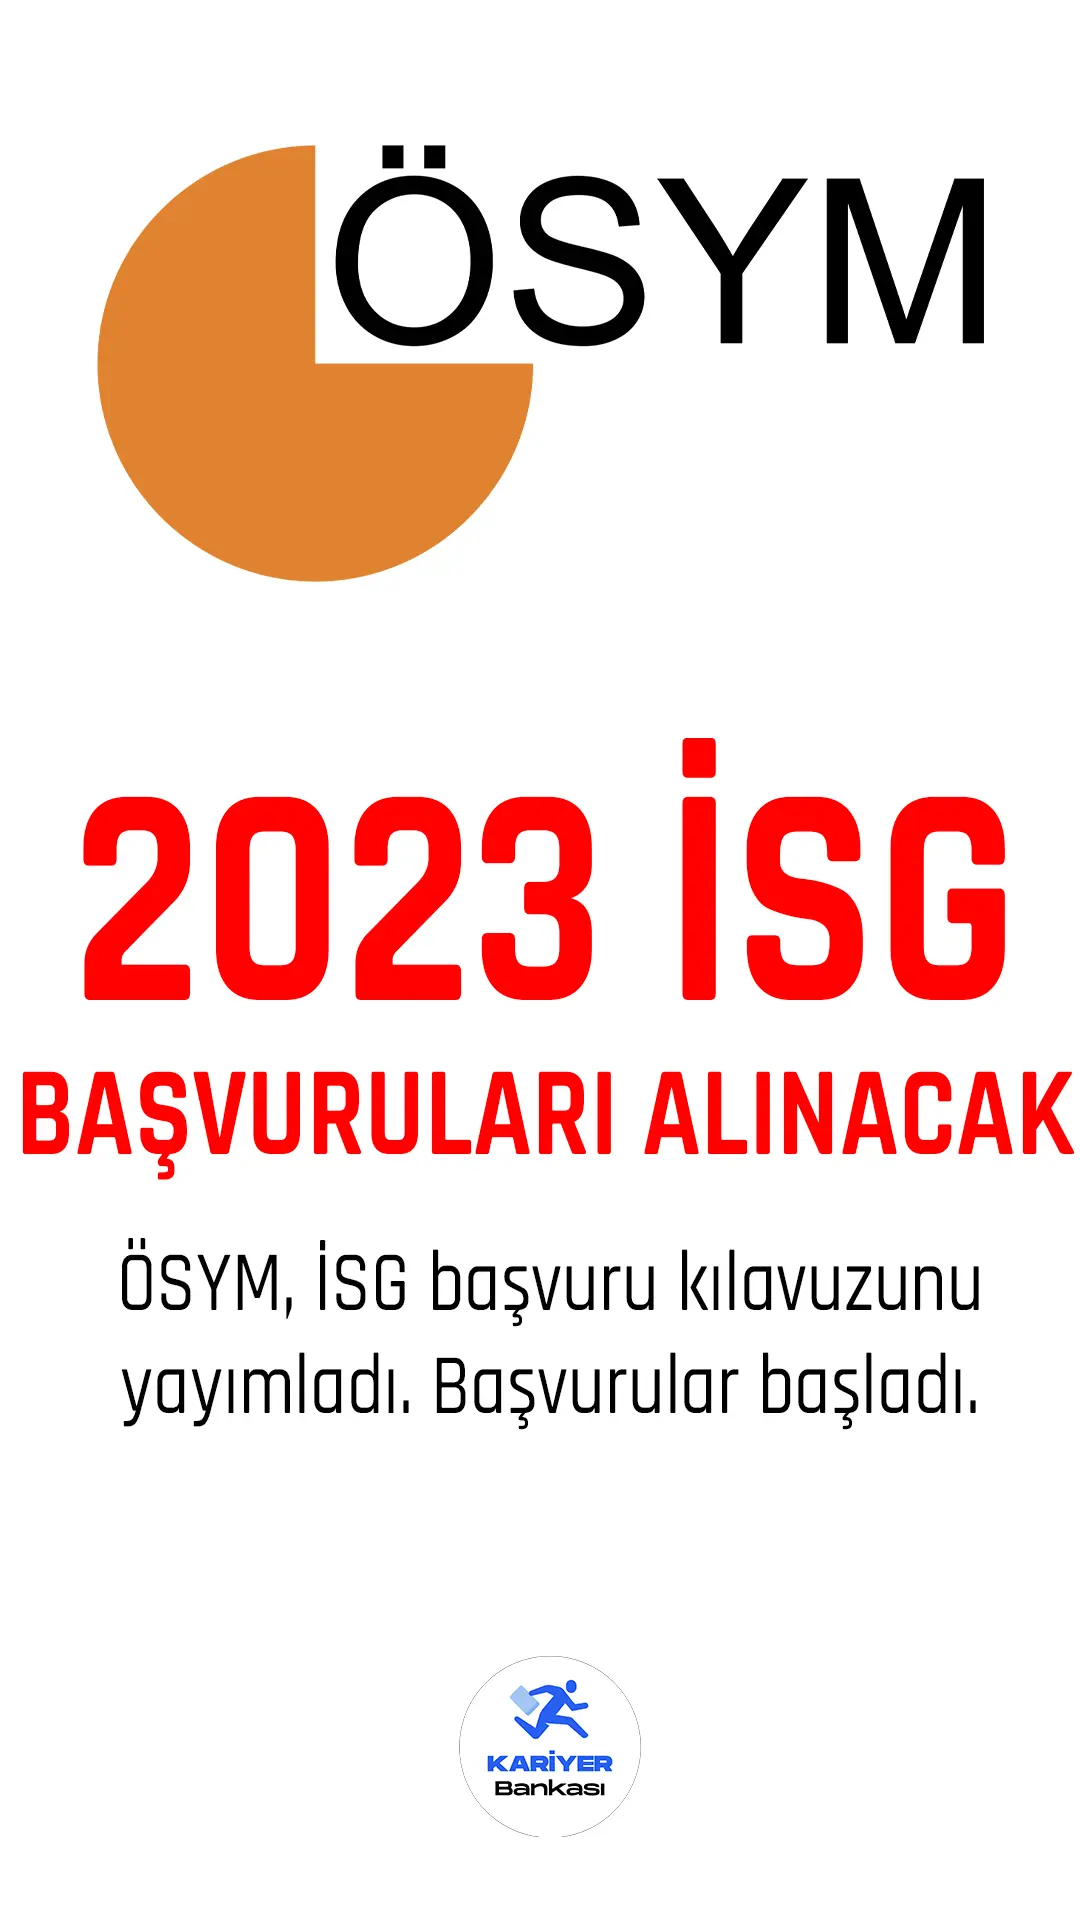 2023 İSG başvuruları alınacak.